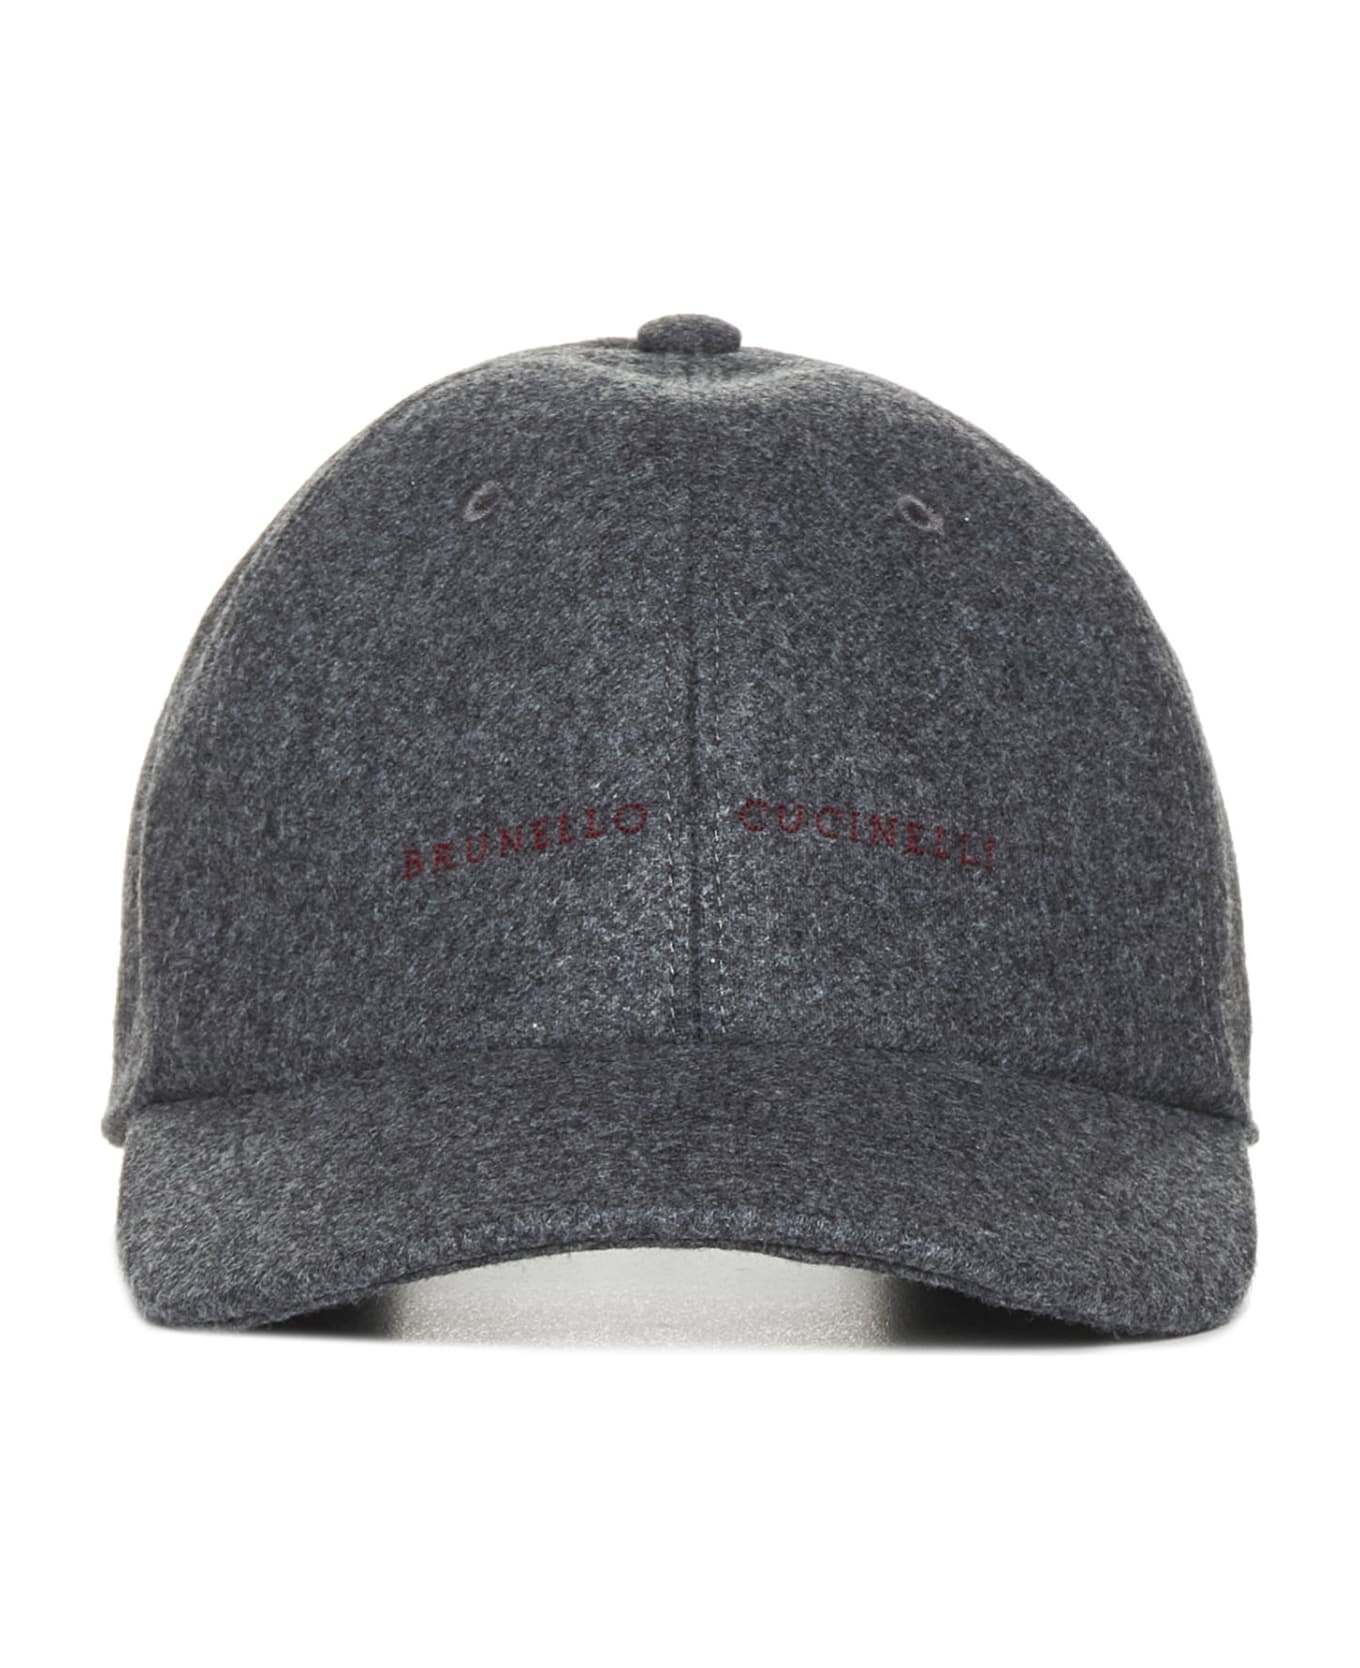 Brunello Cucinelli Logo Embroidered Curved Peak Baseball Cap - Grigio scuro 帽子